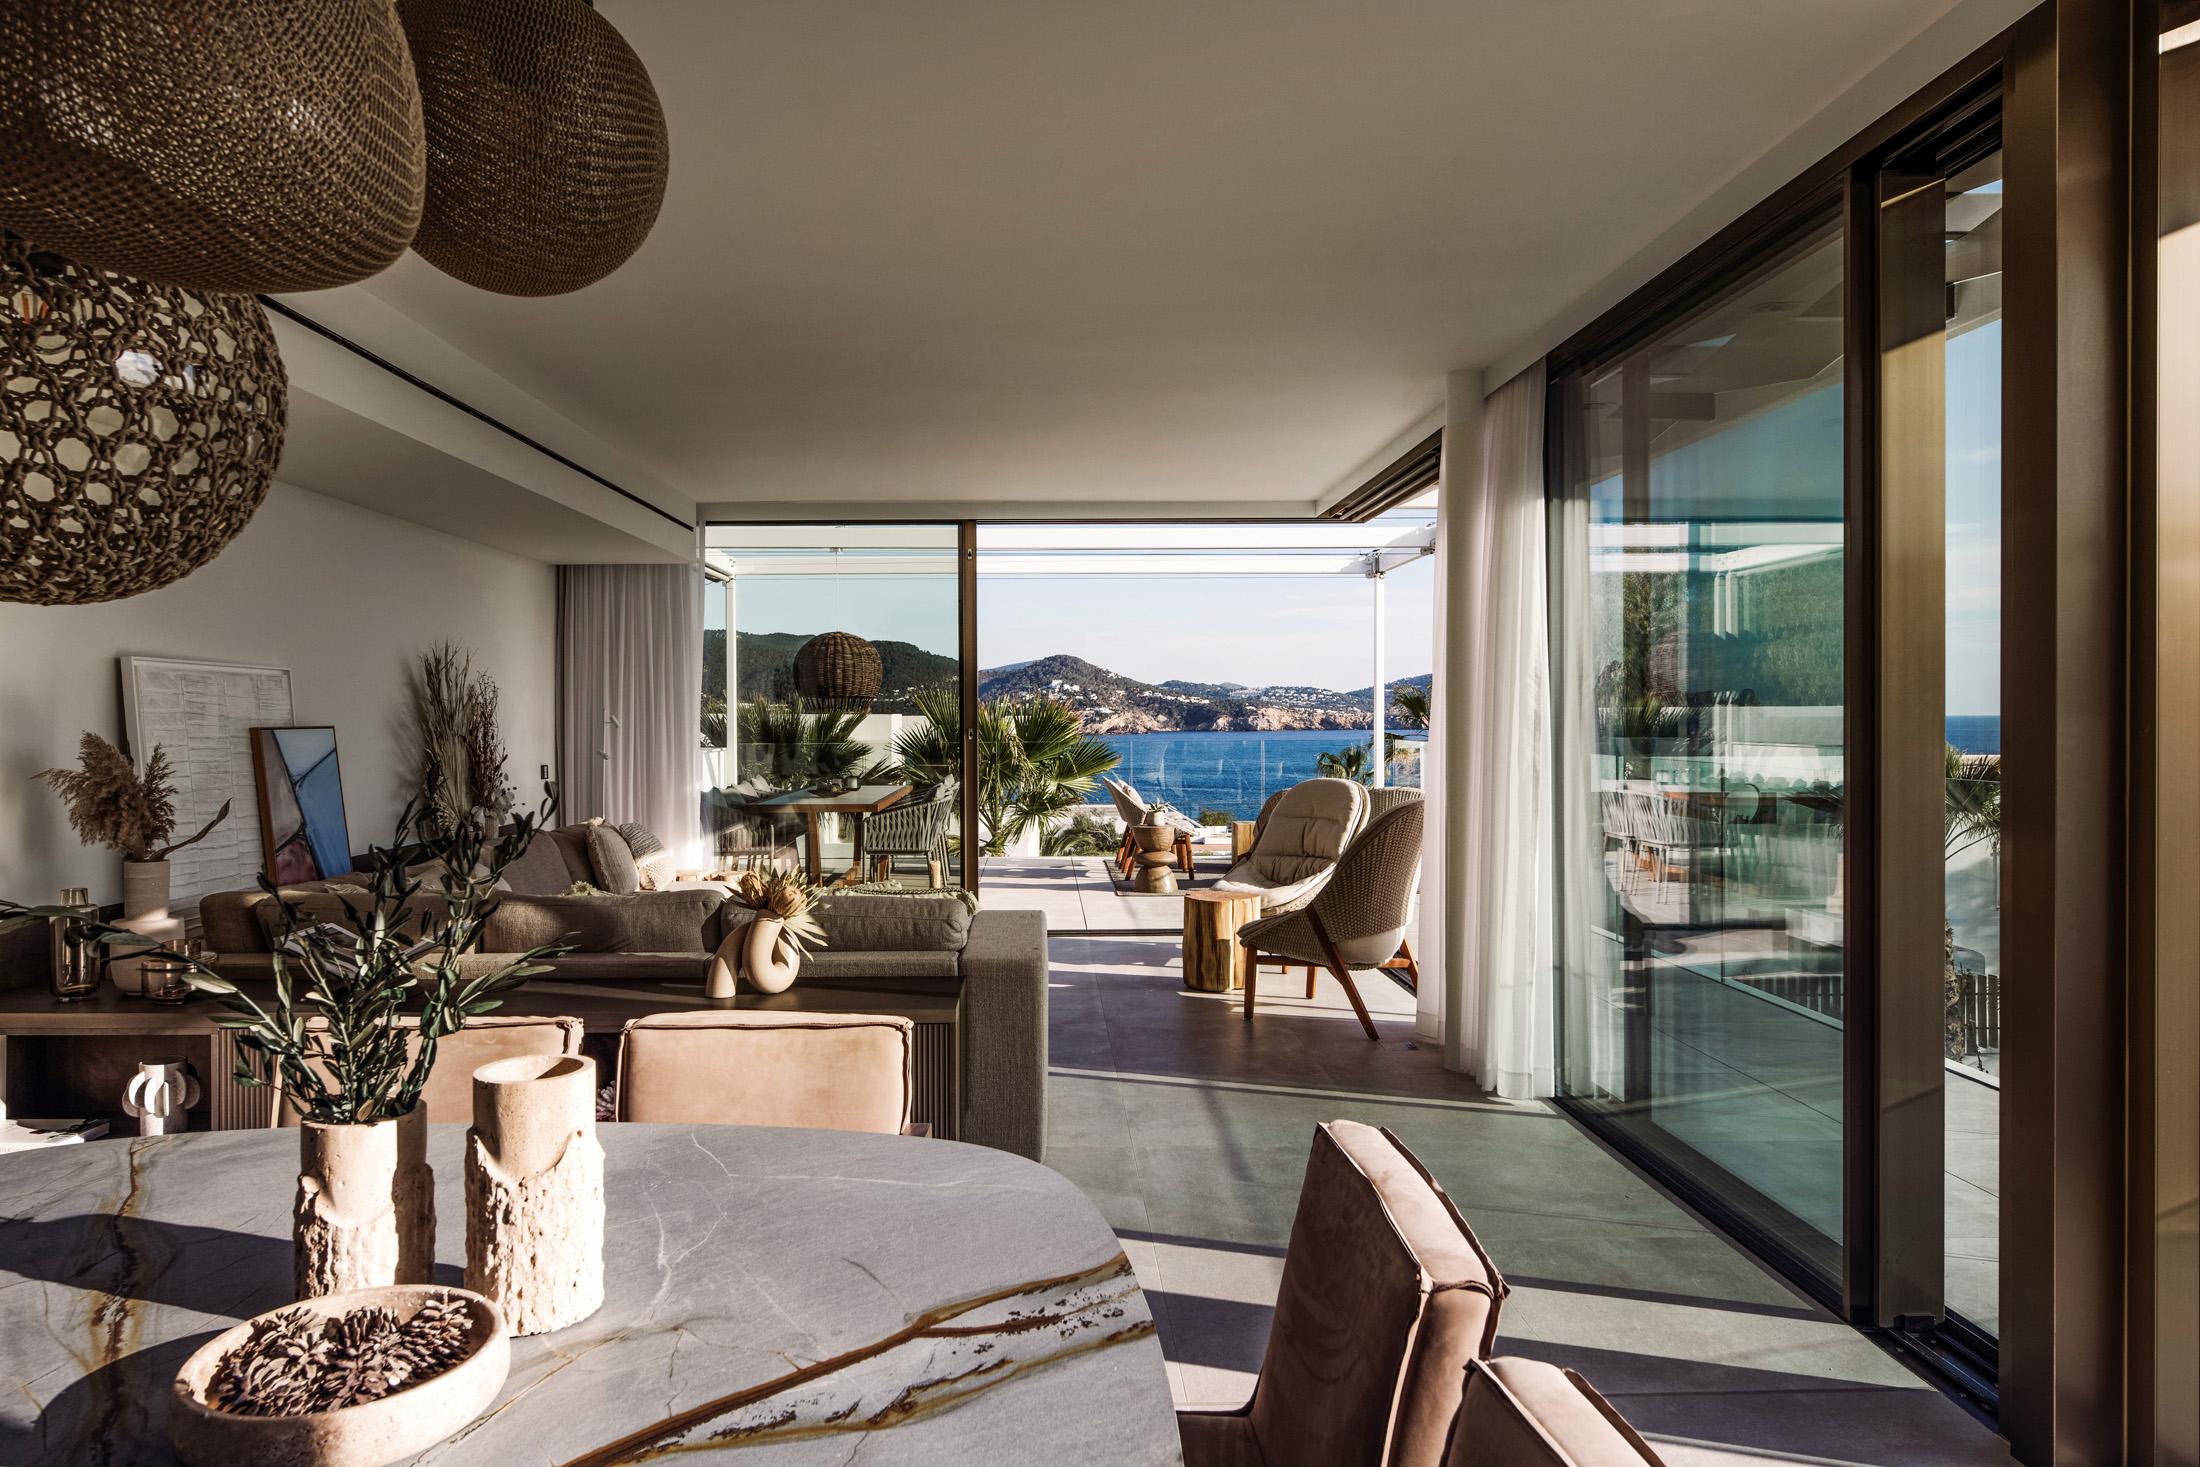 Reception room of a luxury rental villa in Ibiza